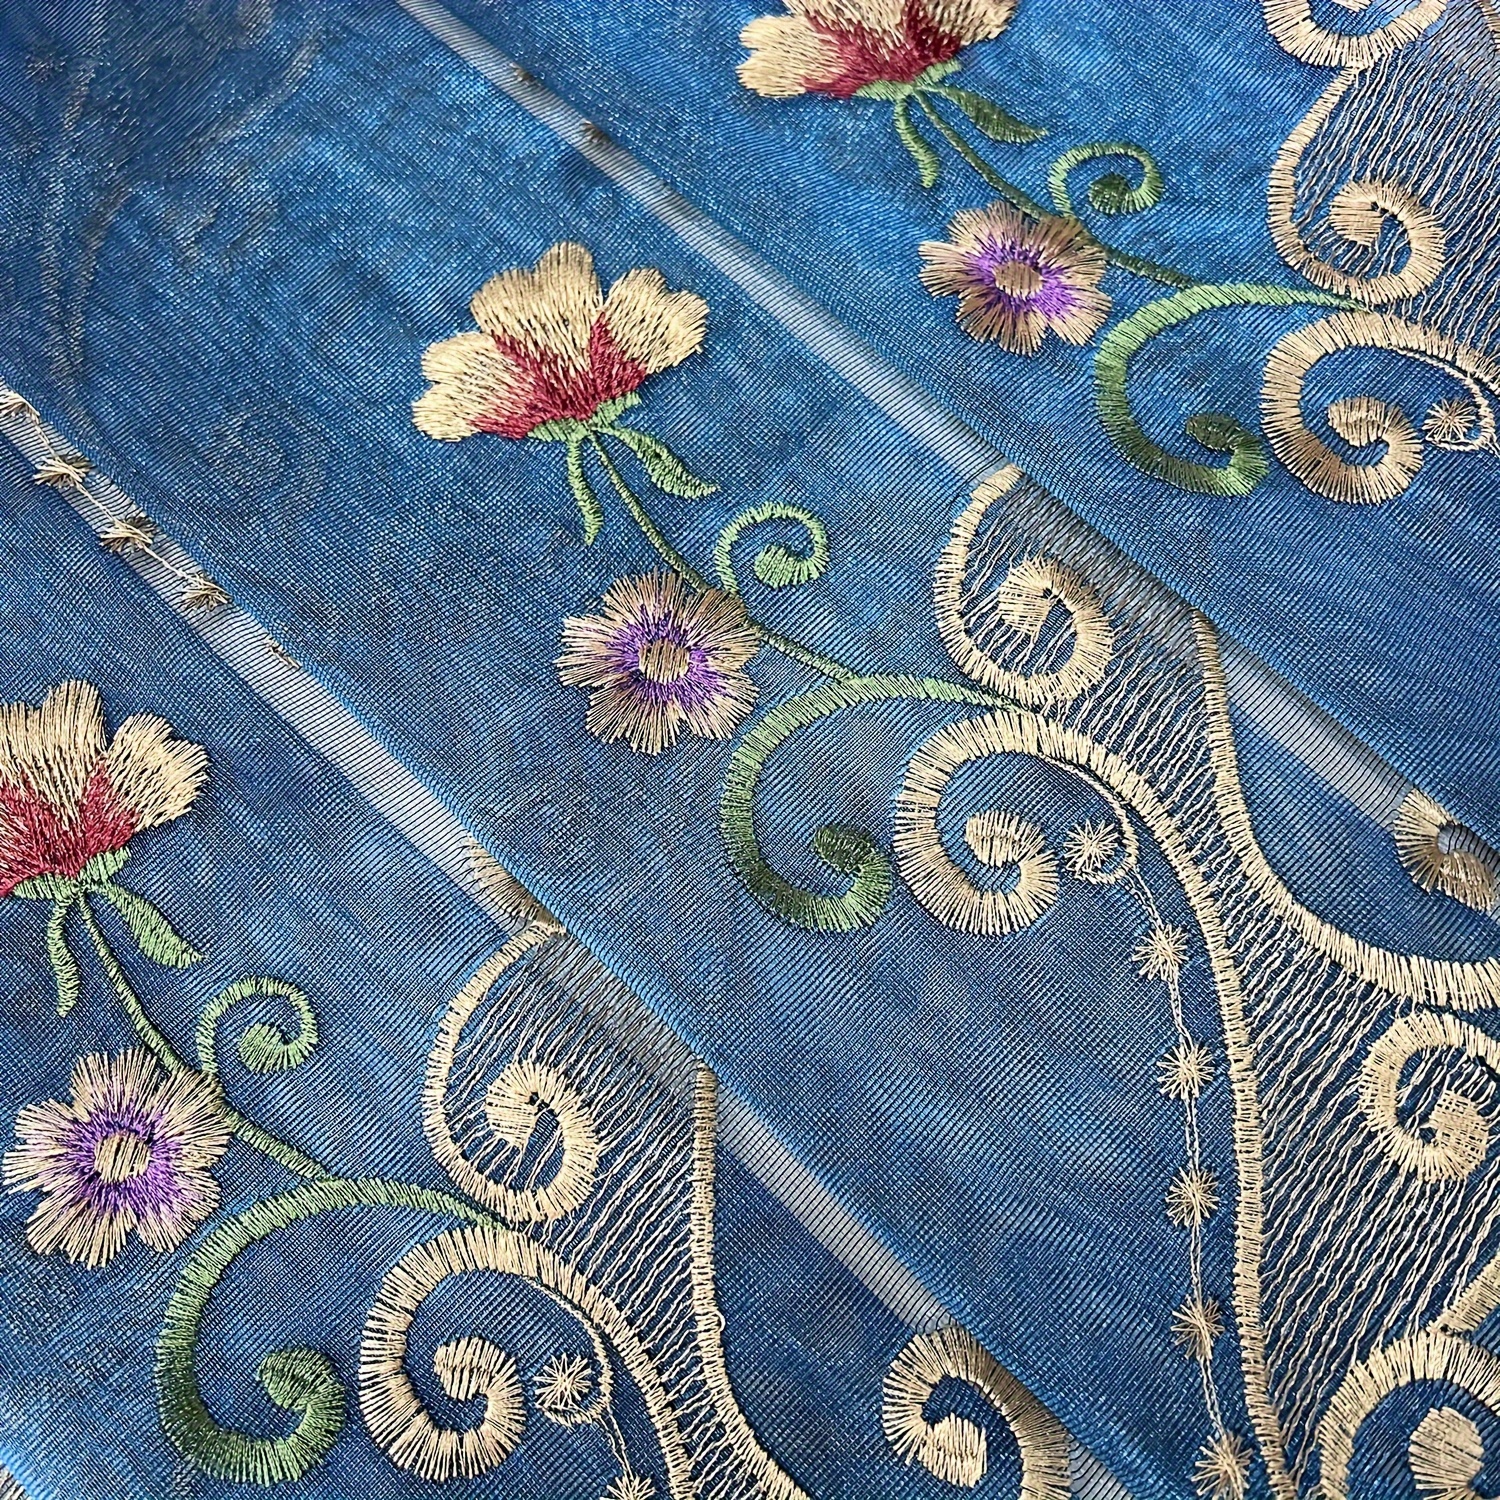 Temple Lion Indigo Blue home decor Drapery Fabric